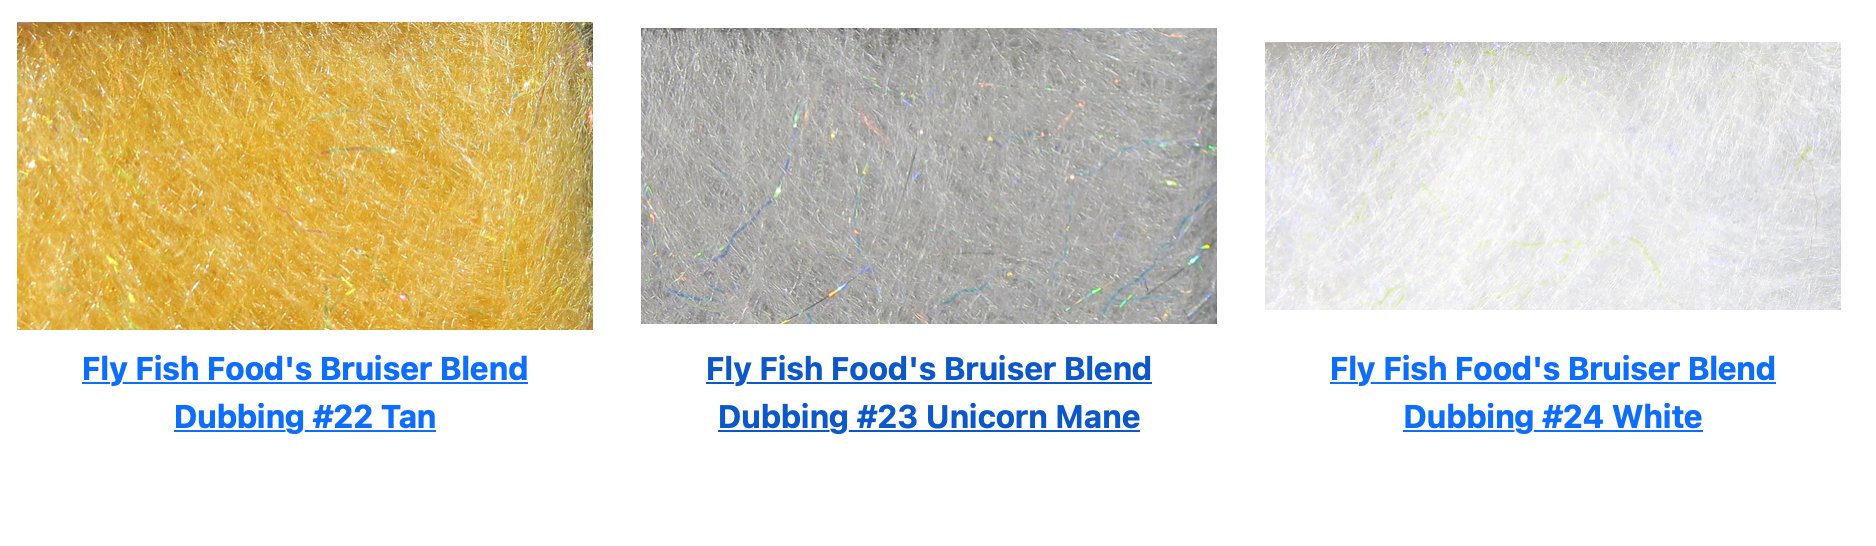 Hareline - Fly Fish Food Bruiser Blend